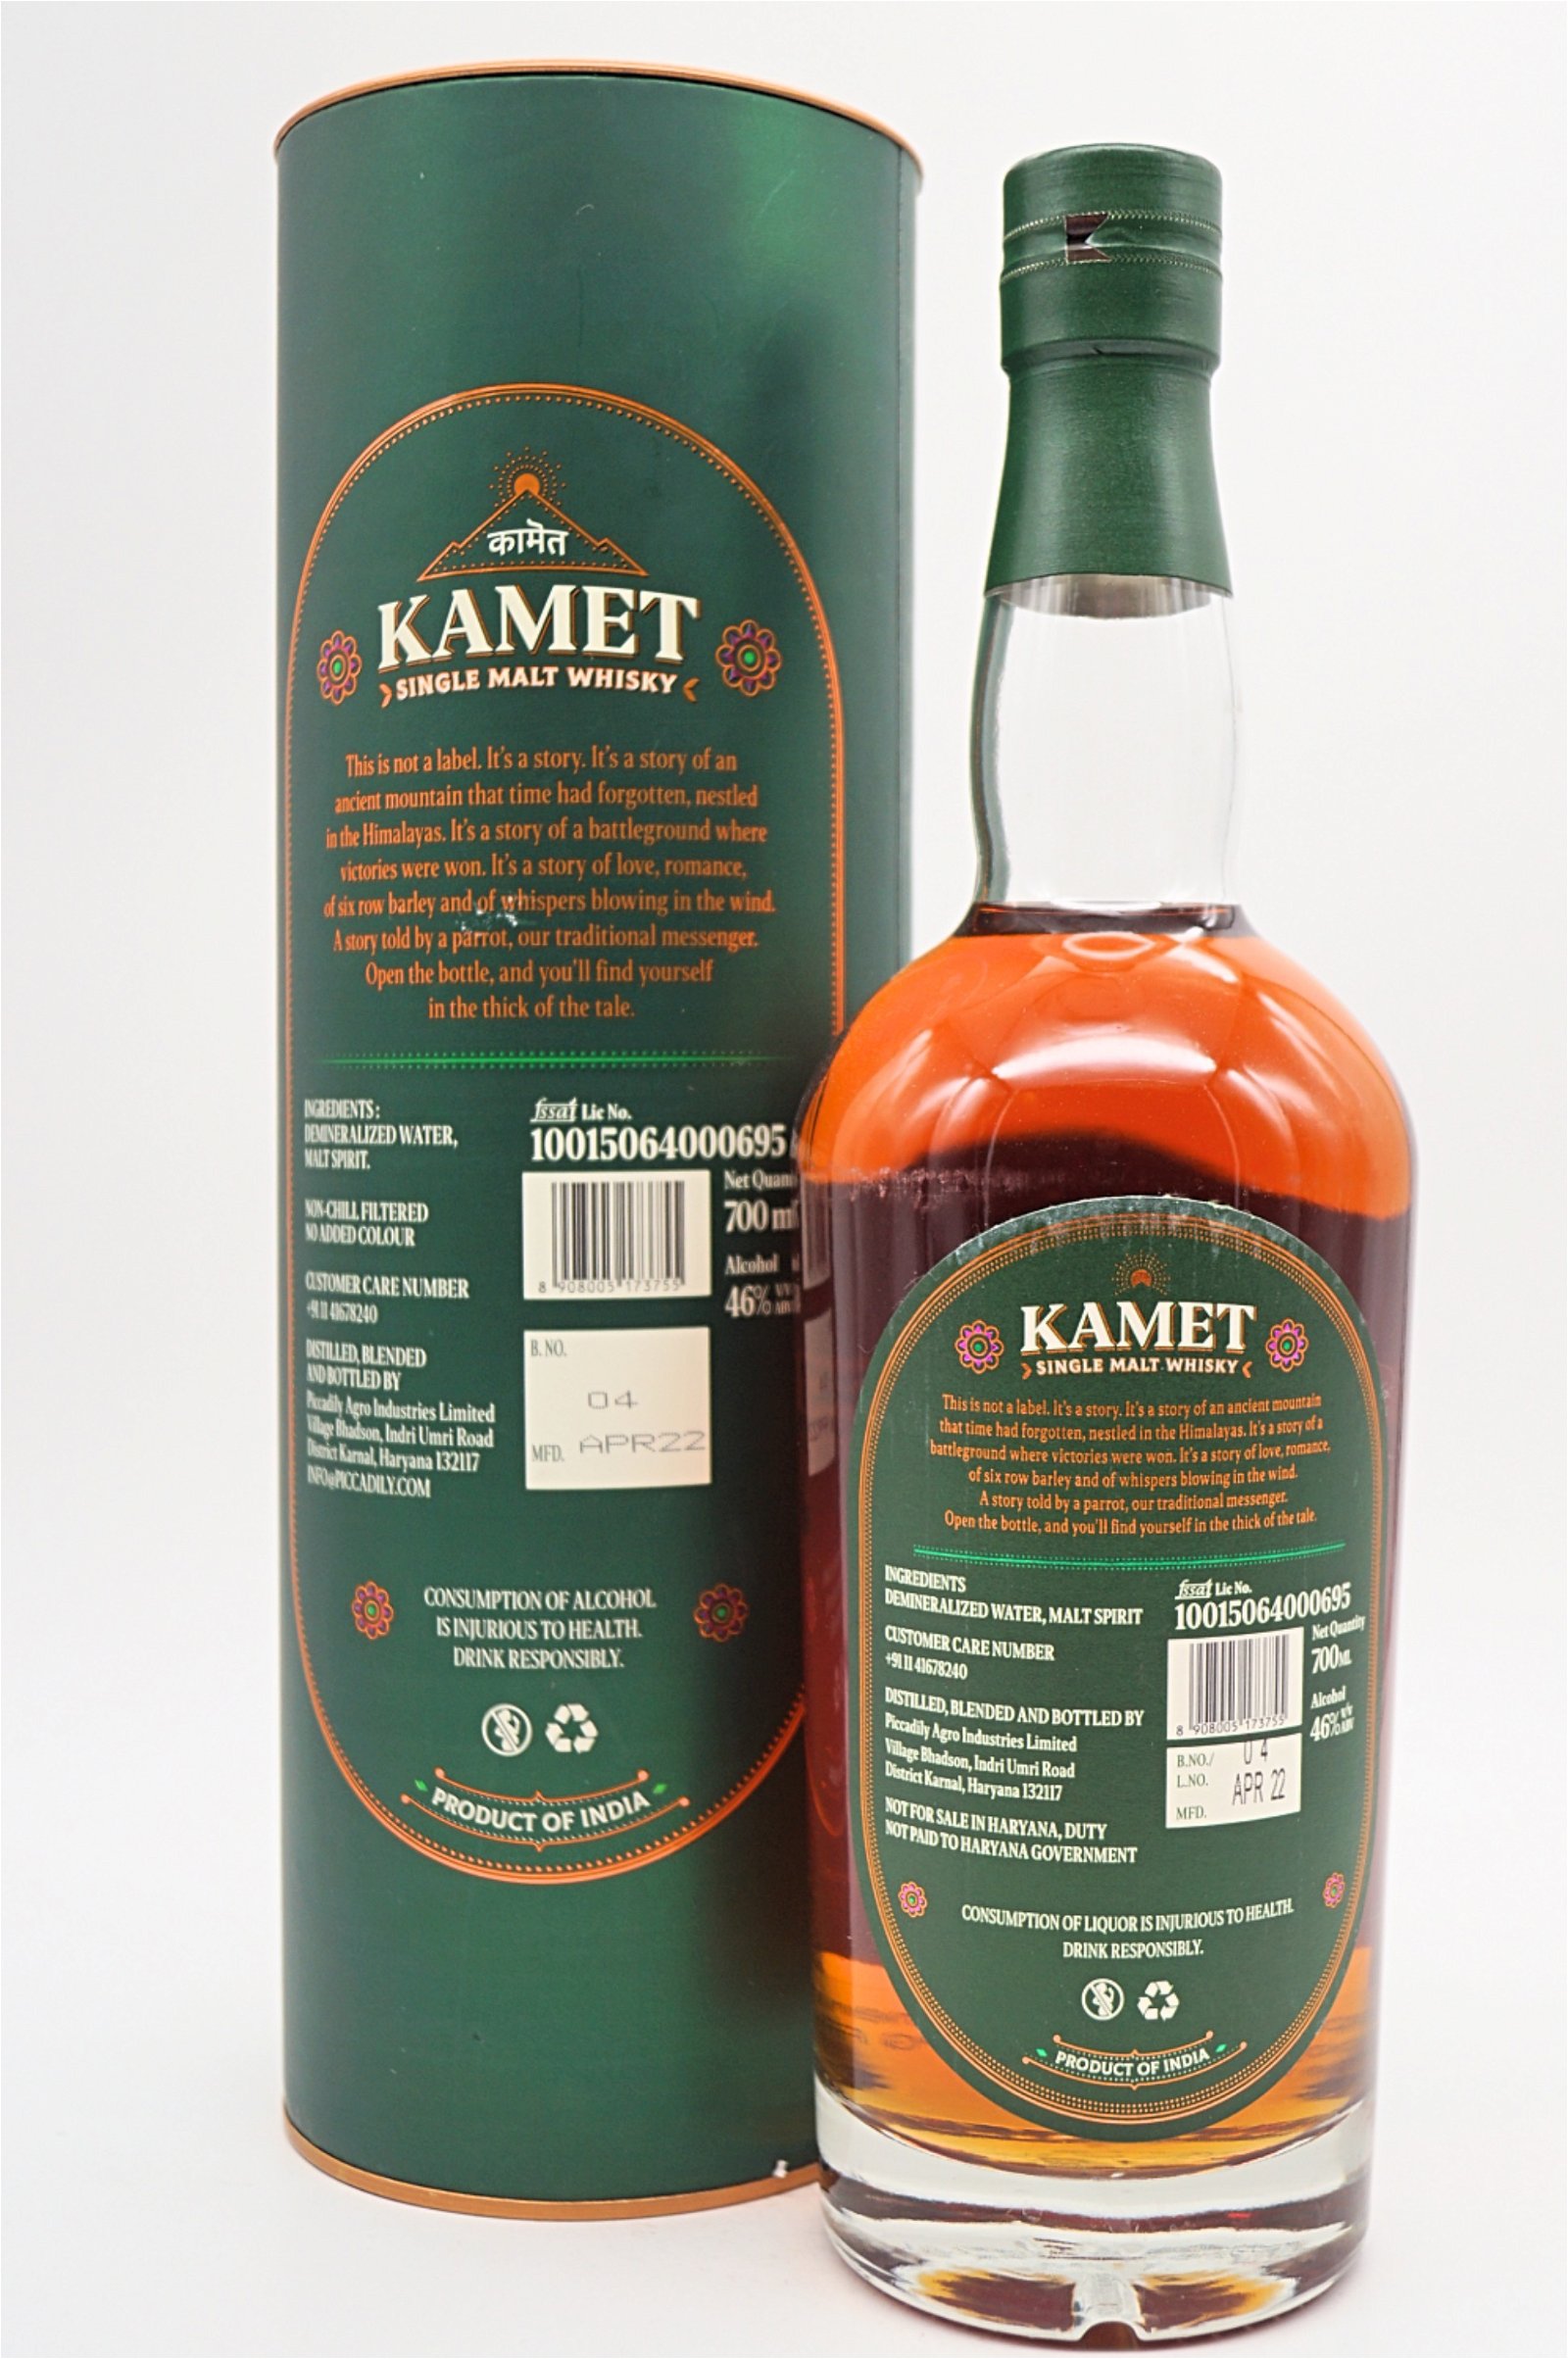 Kamet Indian Single Malt Whisky